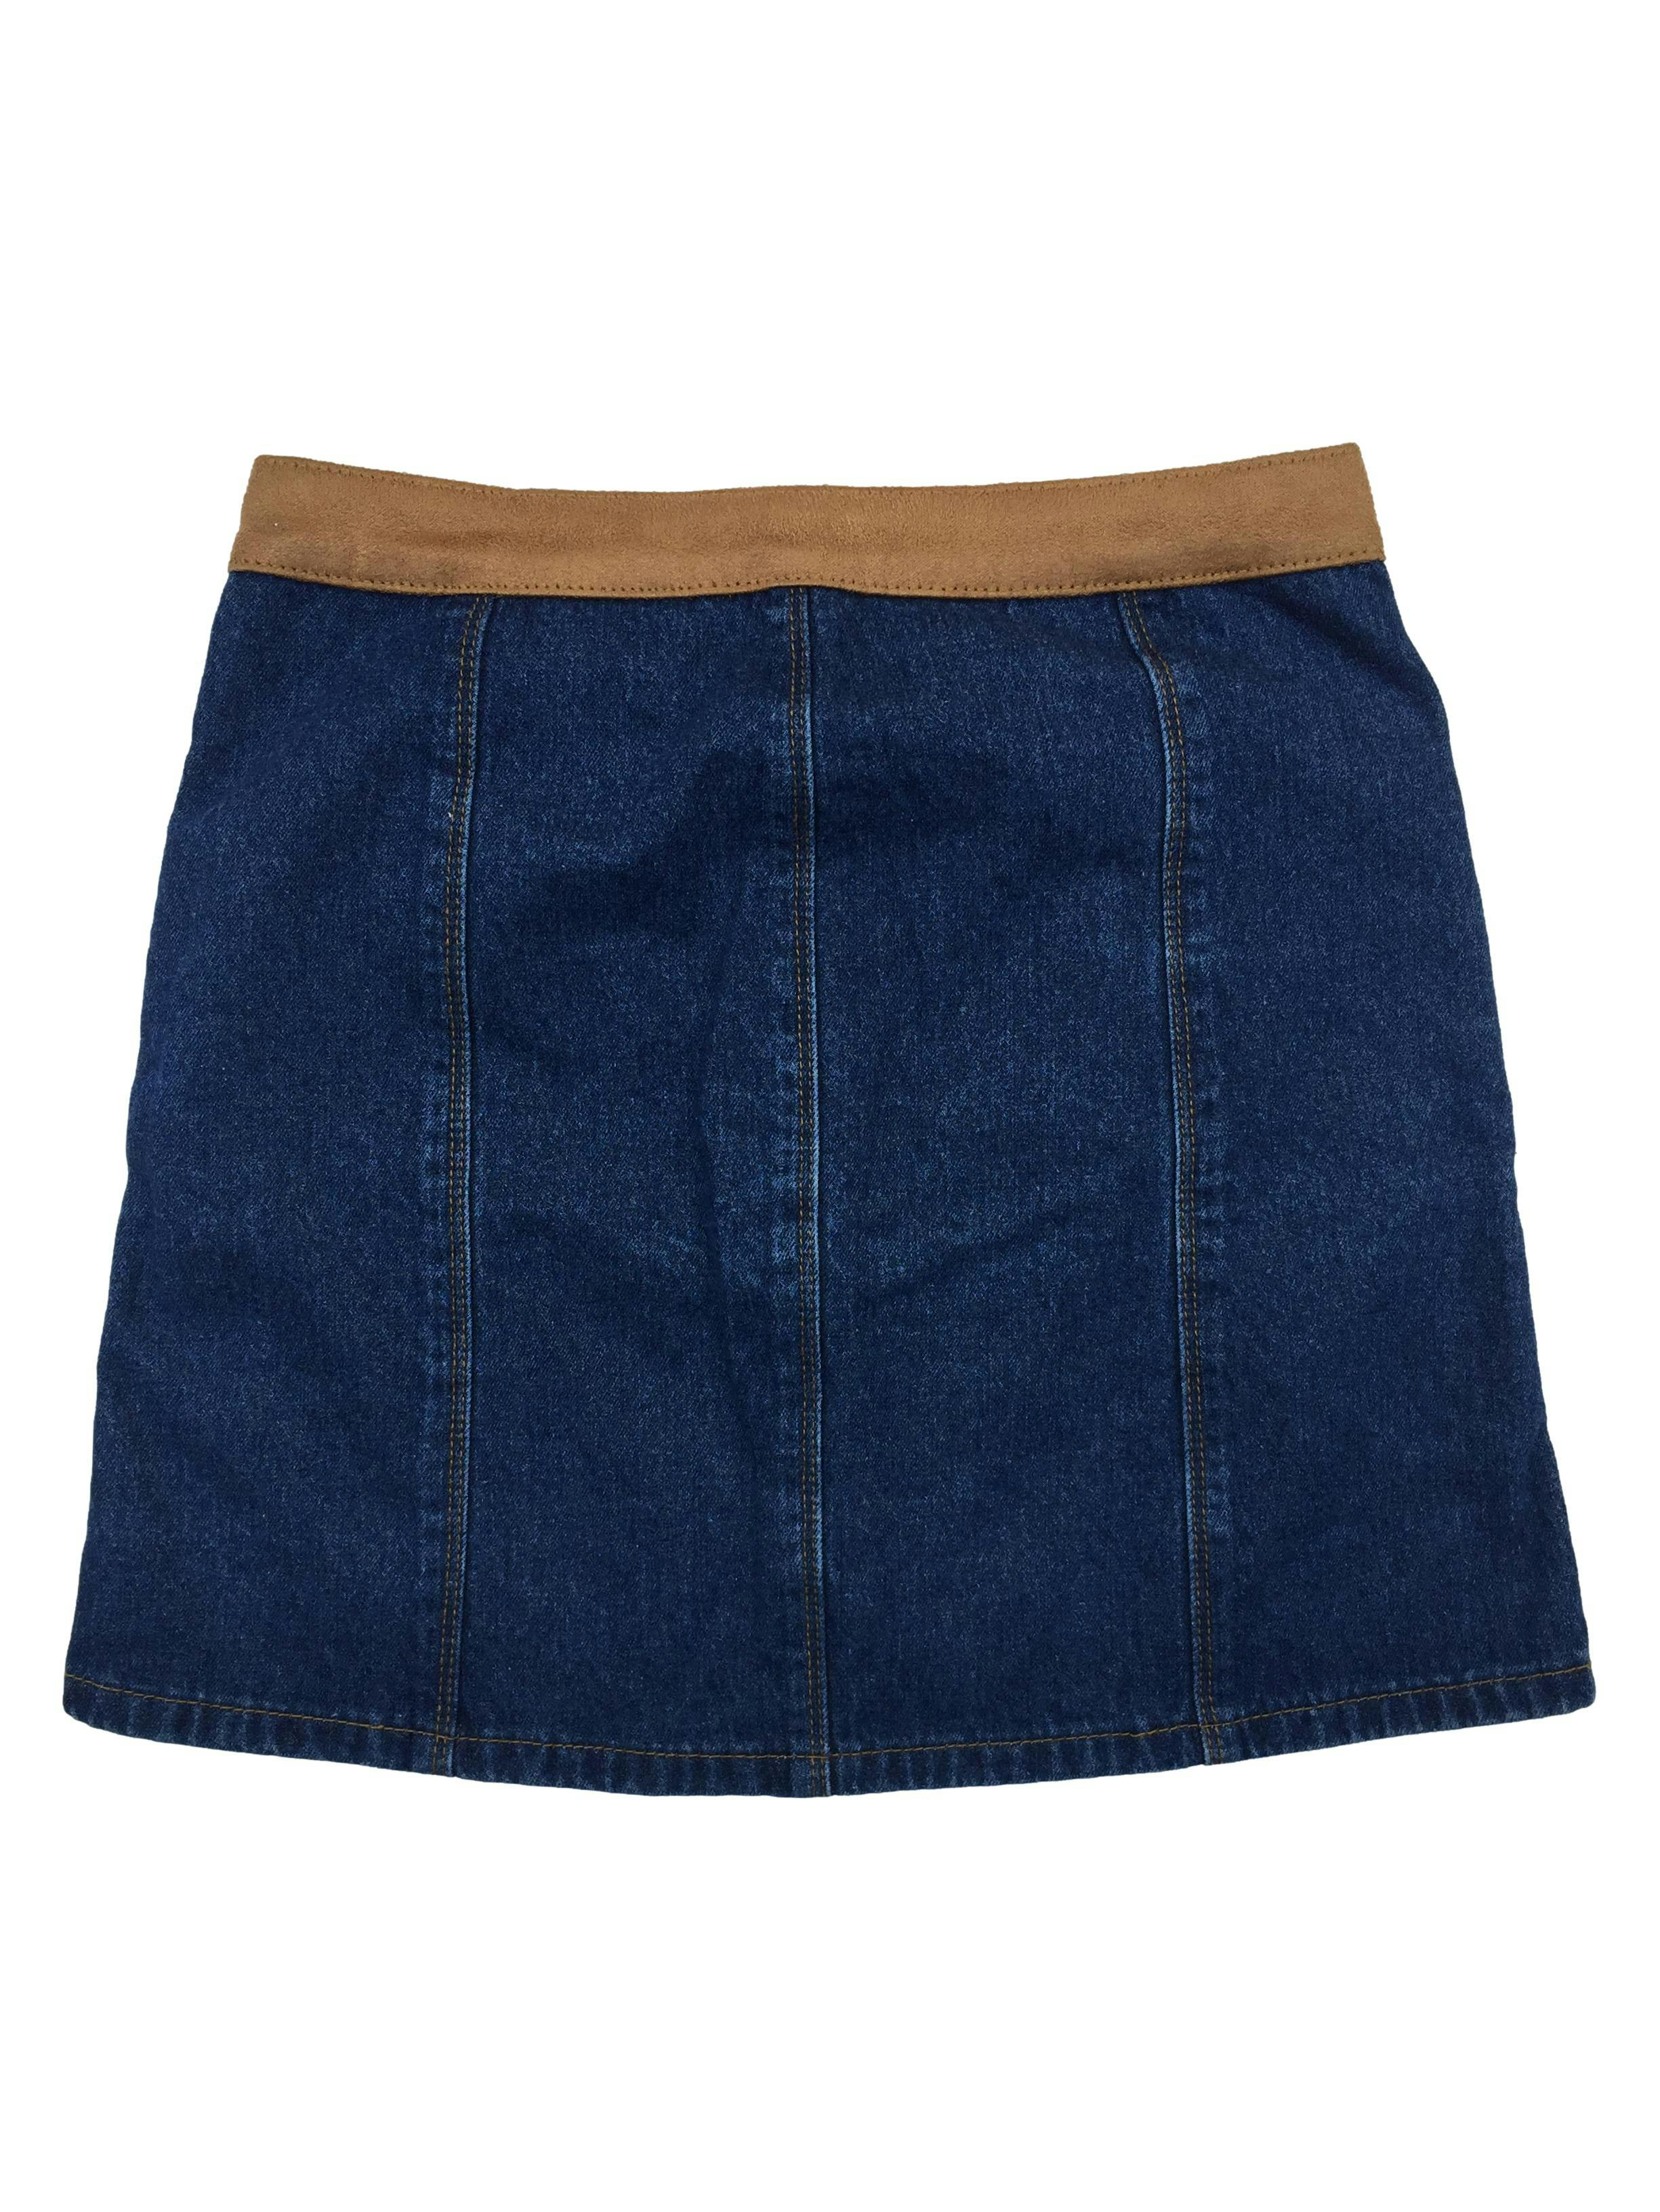 Falda Opposite jean, bolsillos y botones delanteros, bordes tipo piel de durazno. Cintura: 72cm, Largo: 43cm